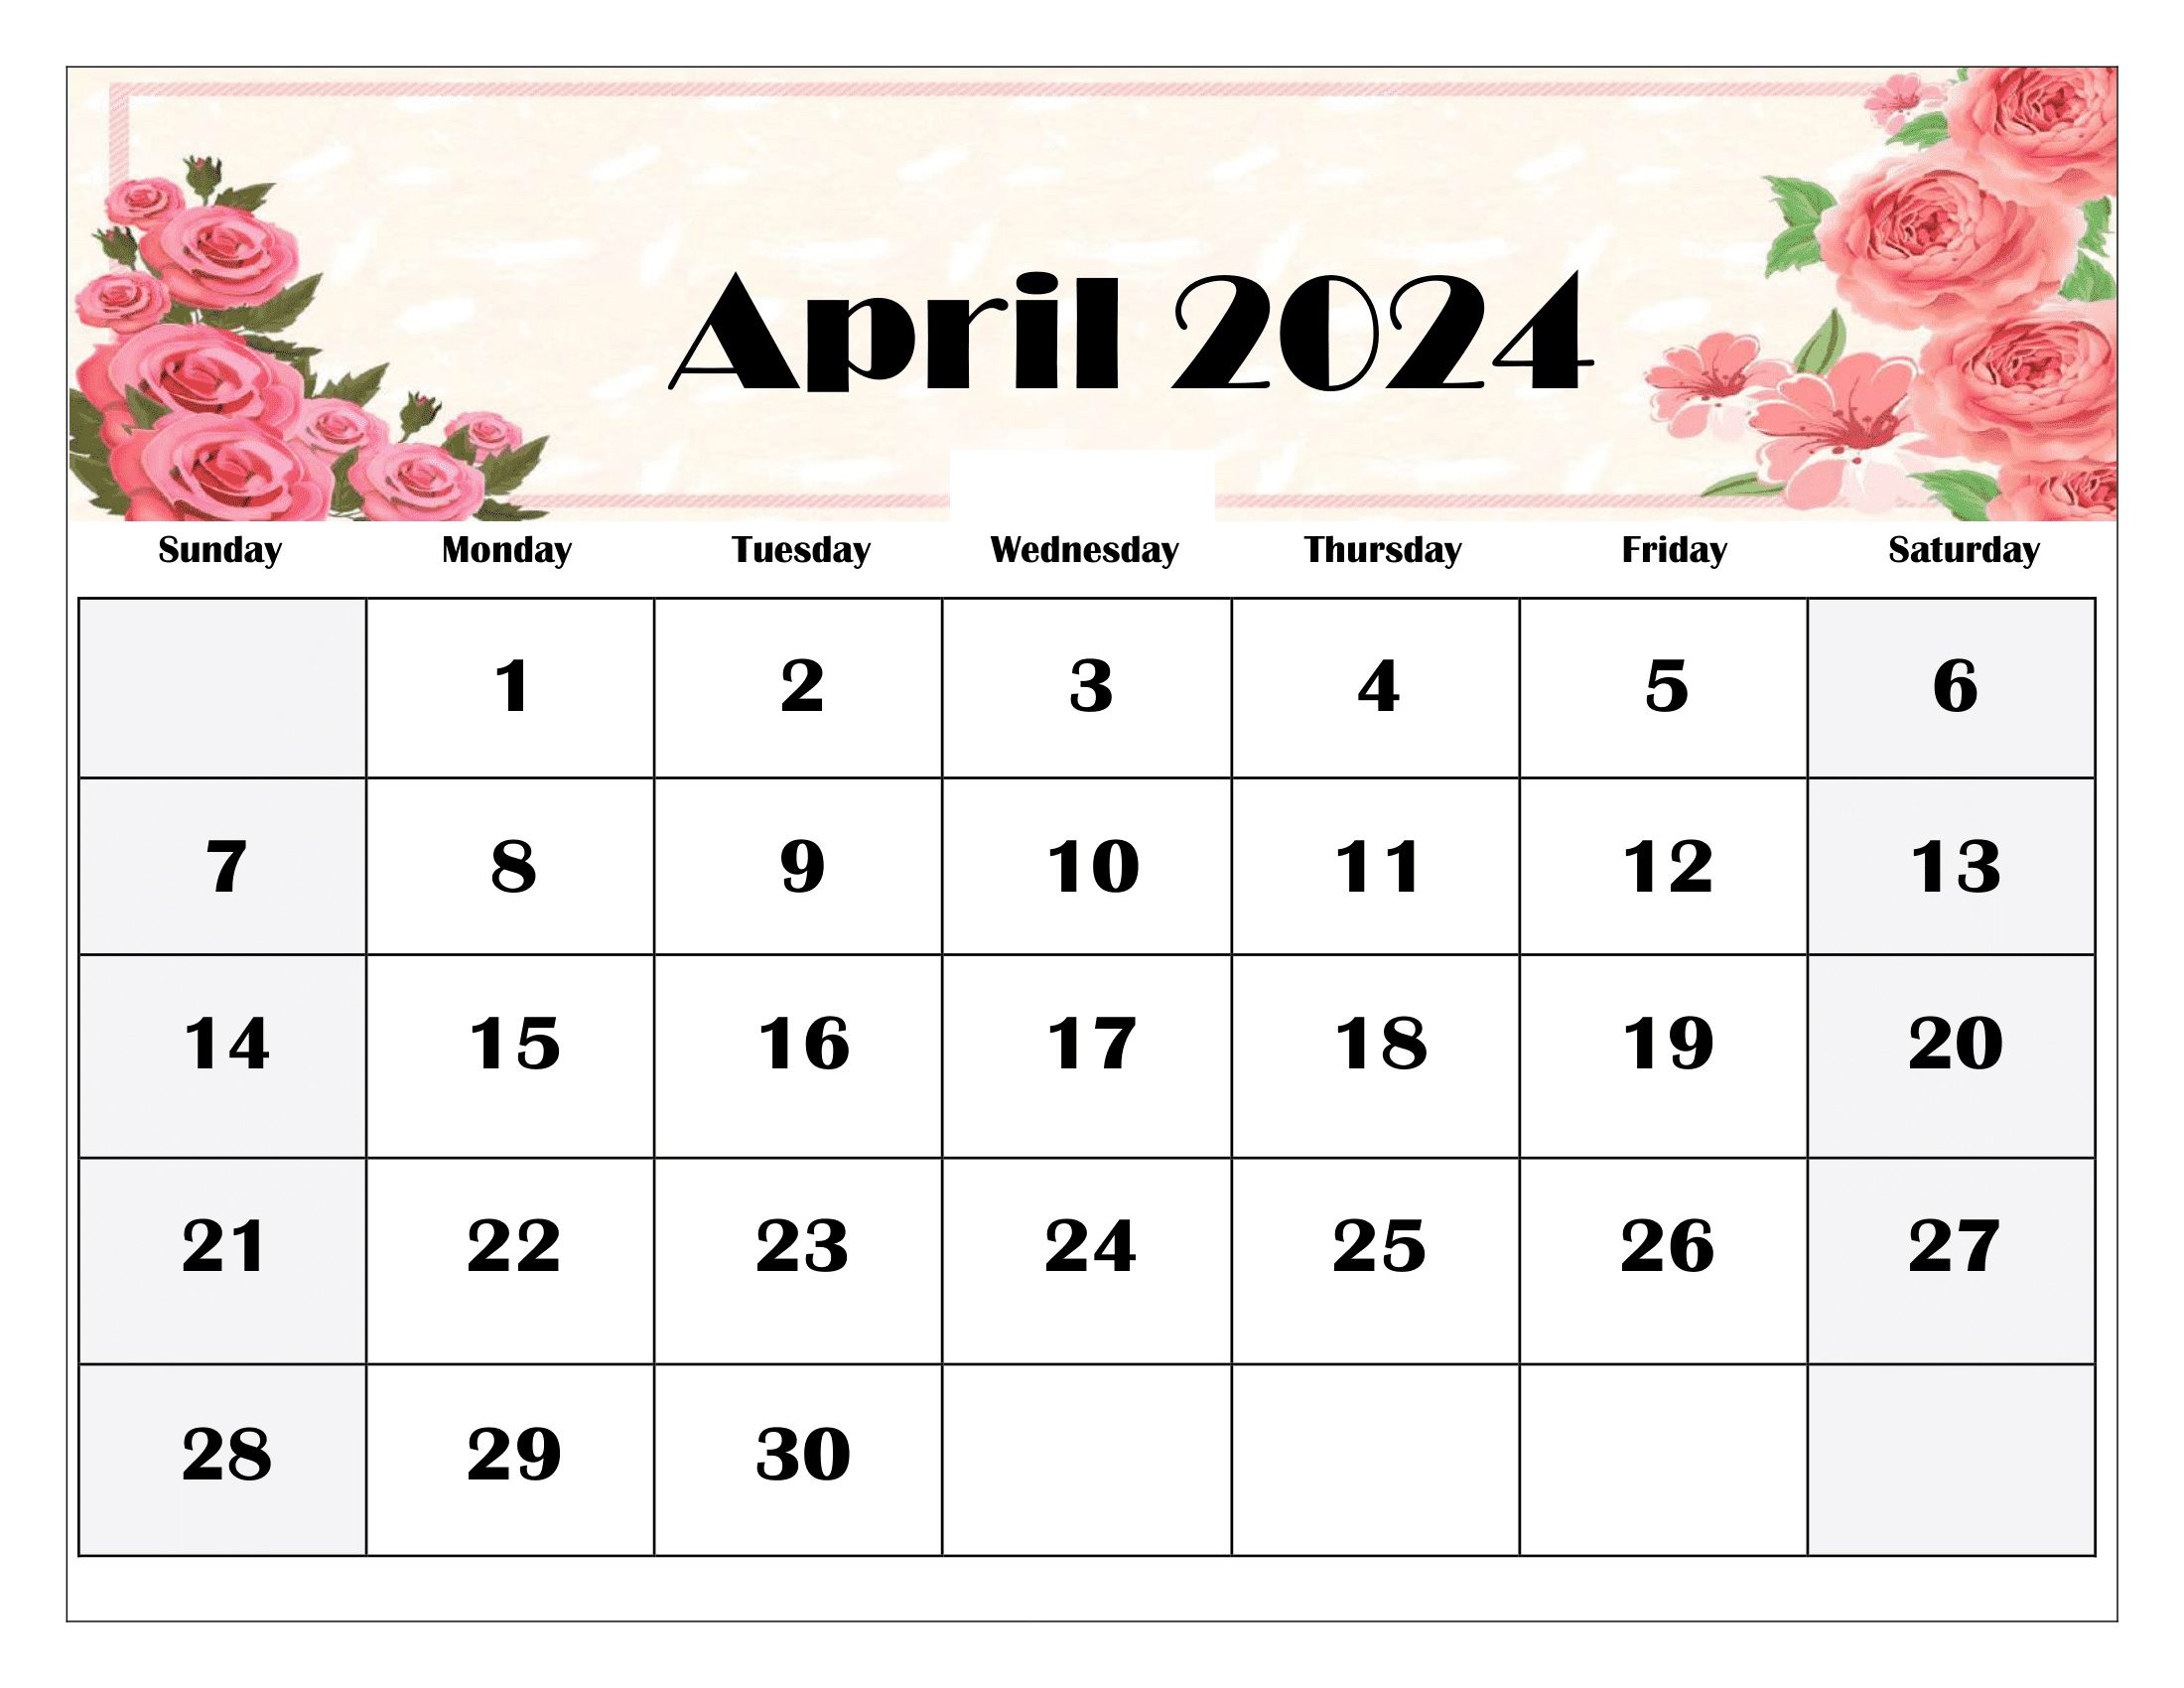 April Calendar 2024 Templates